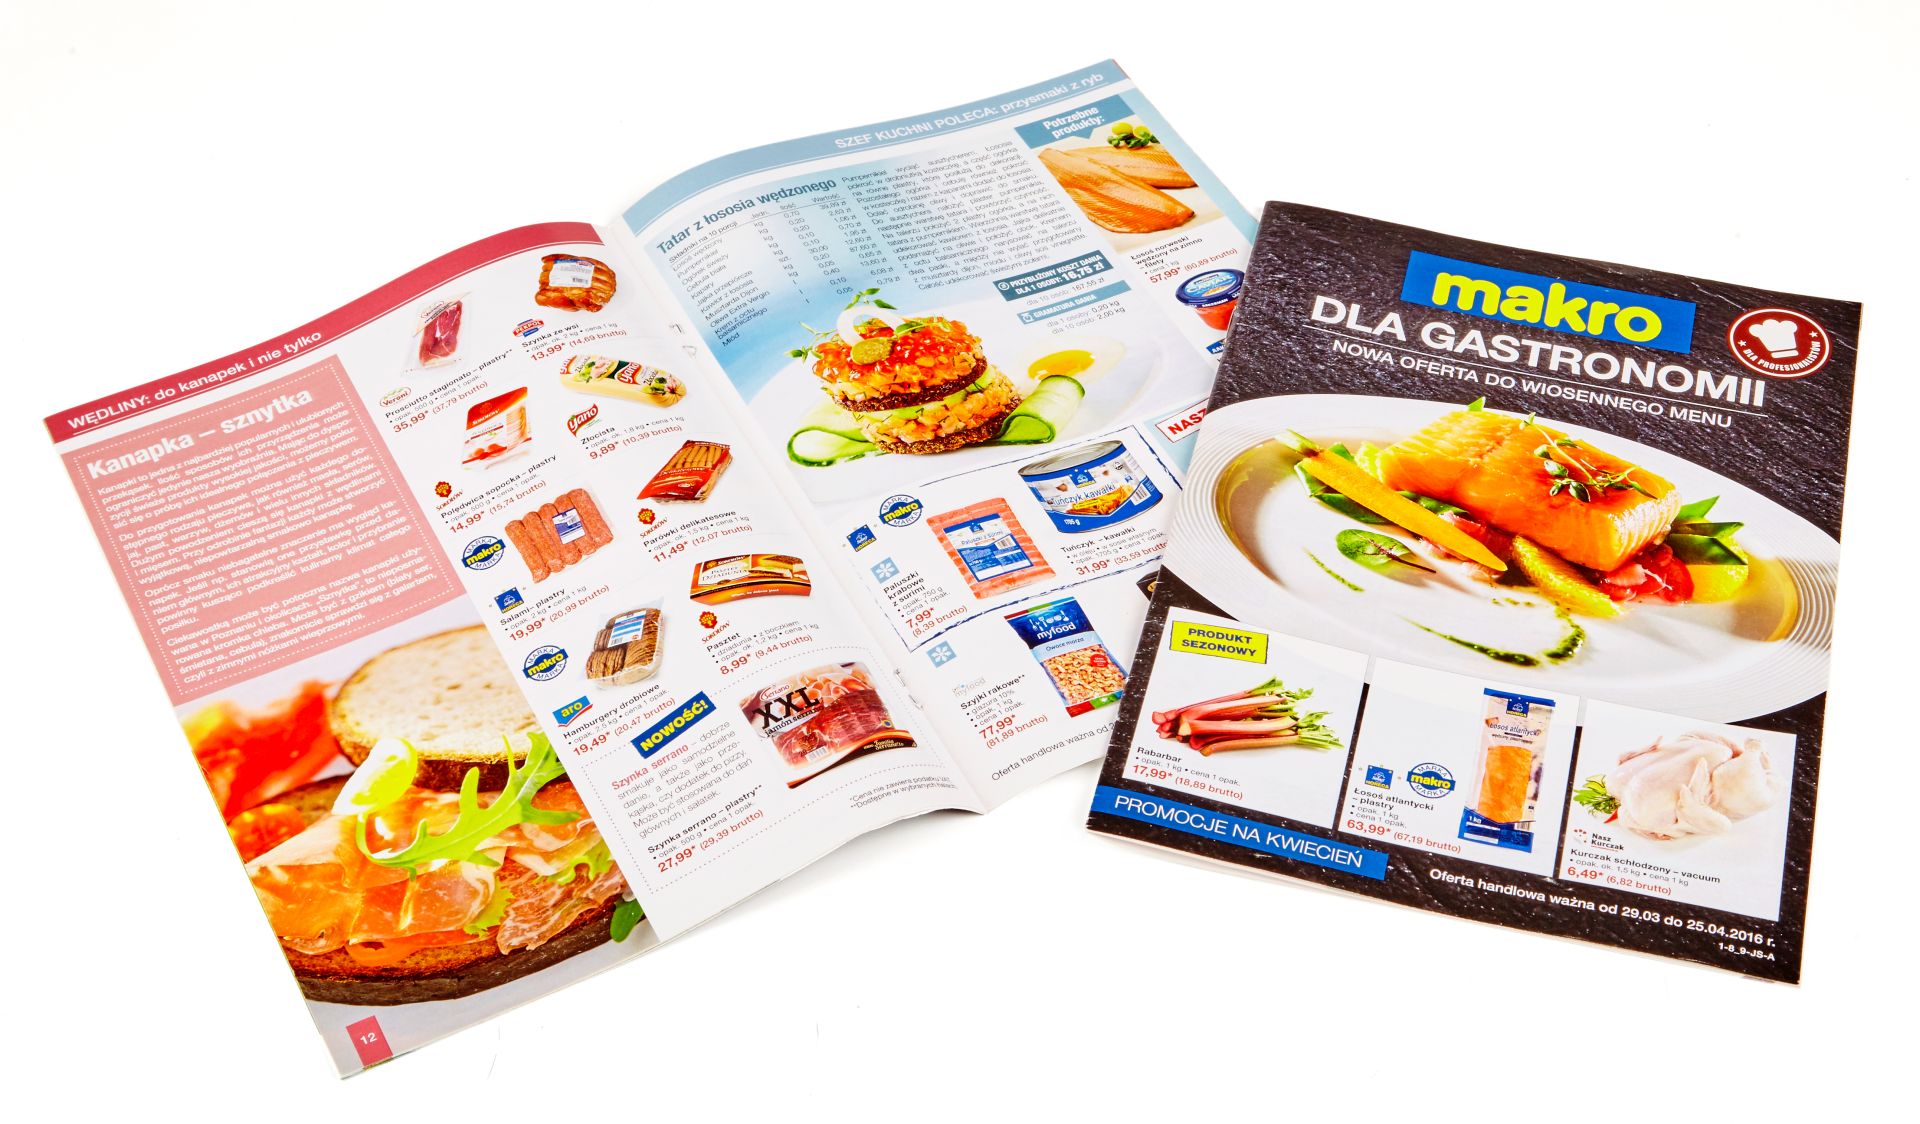 Makro wprowadziło nowy katalog dla gastronomii